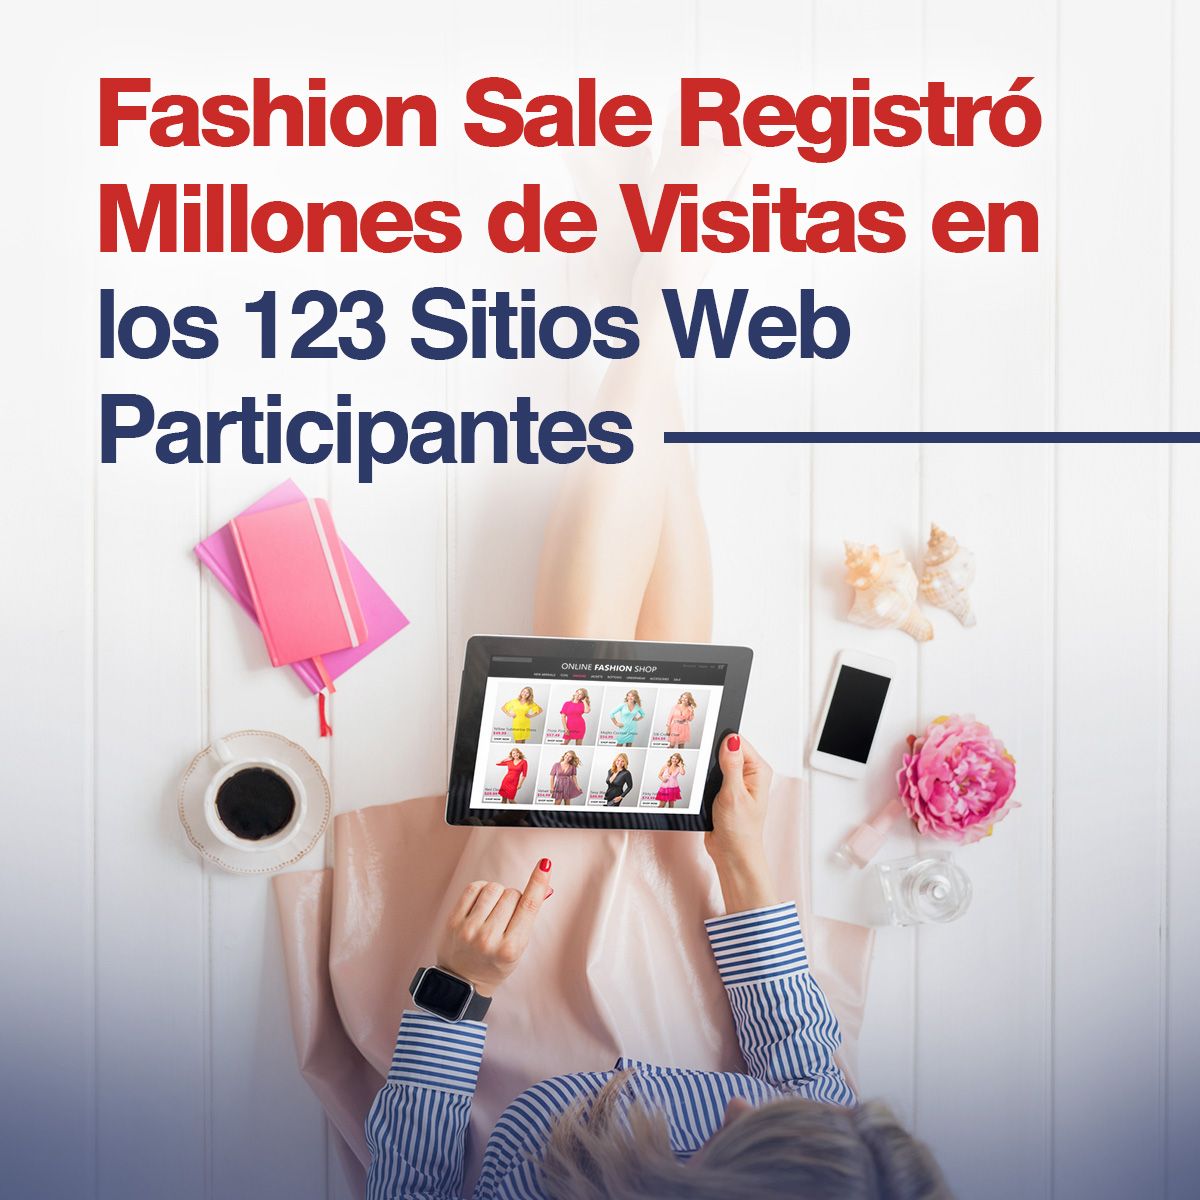 Fashion Sale Registró Millones de Visitas en los 123 Sitios Web Participantes